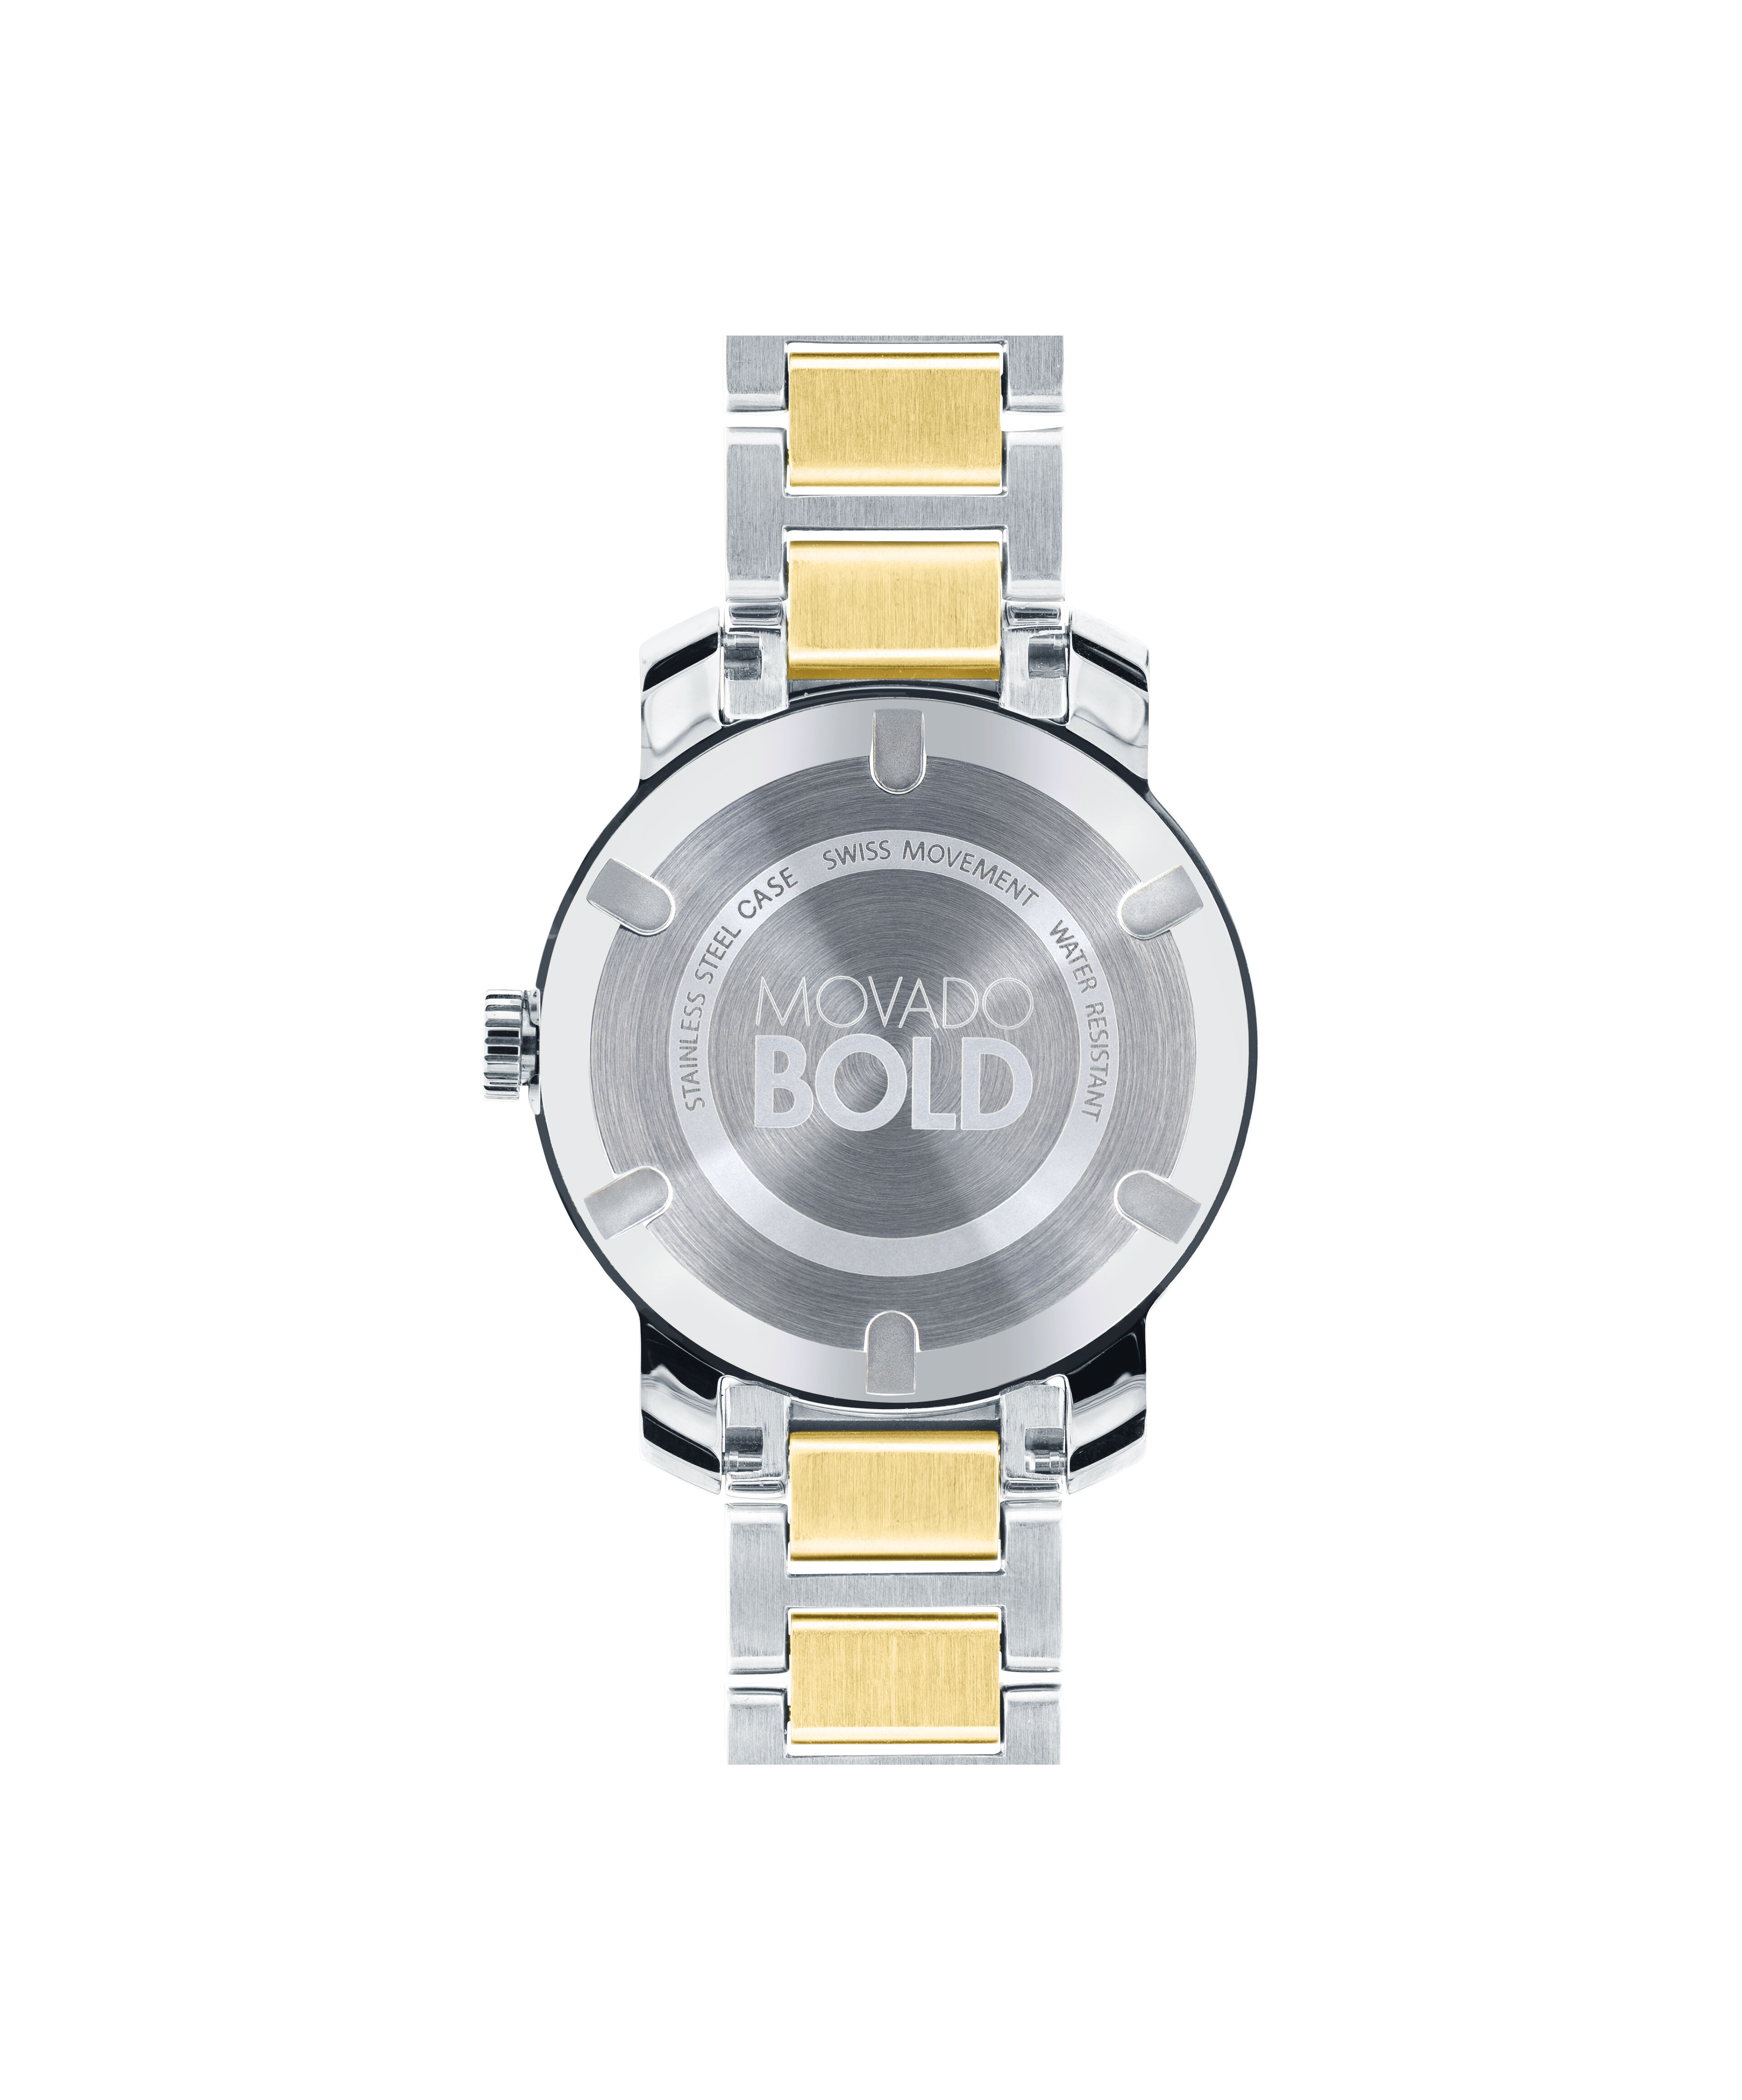 Cheap Rolex Watch Replica